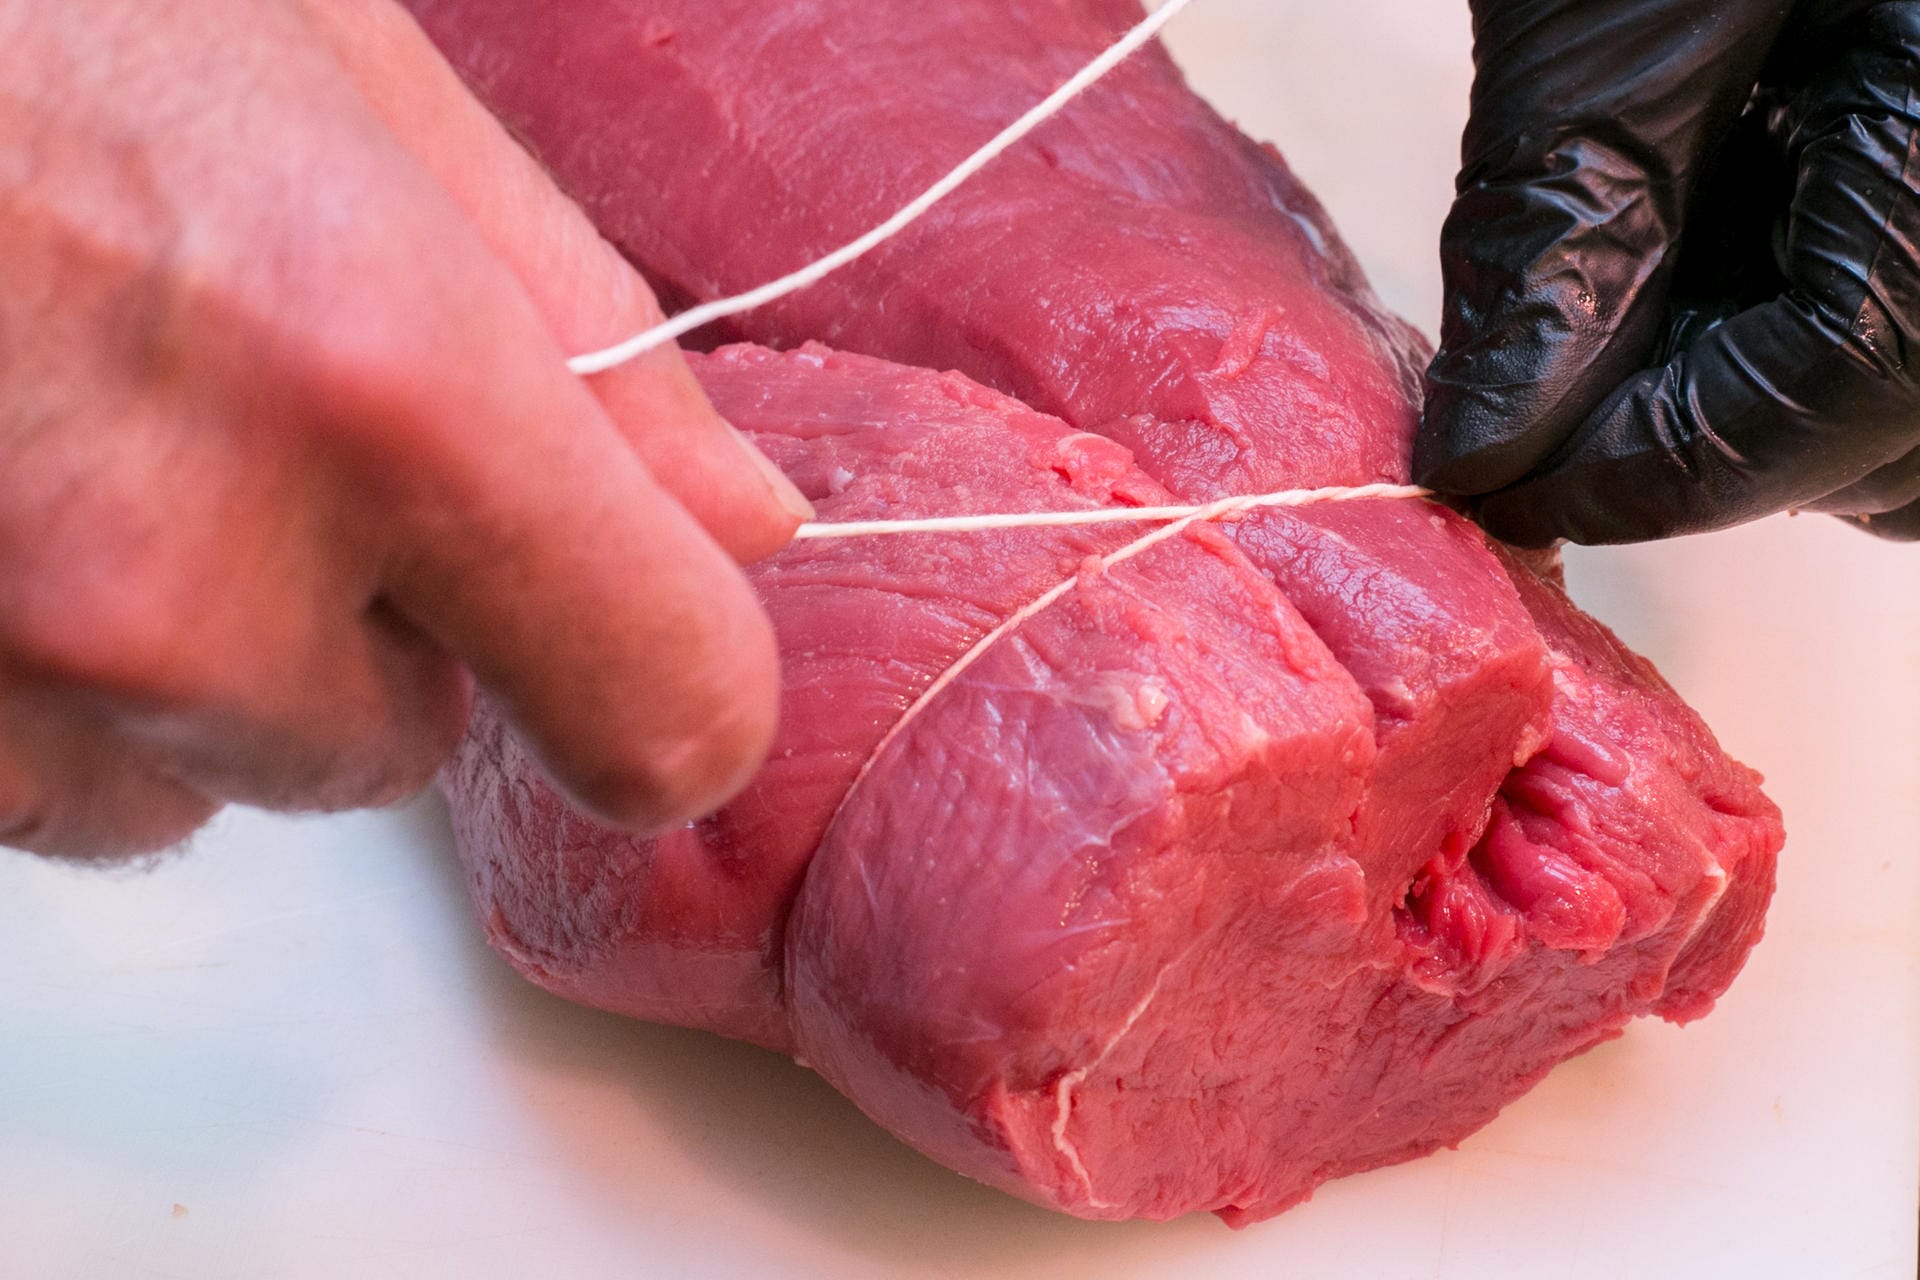 Schritt 5: Um das Fleisch in Form zu bringen, braucht man Küchengarn. Damit das Fleisch in mehreren Schritten zusammenschnüren.